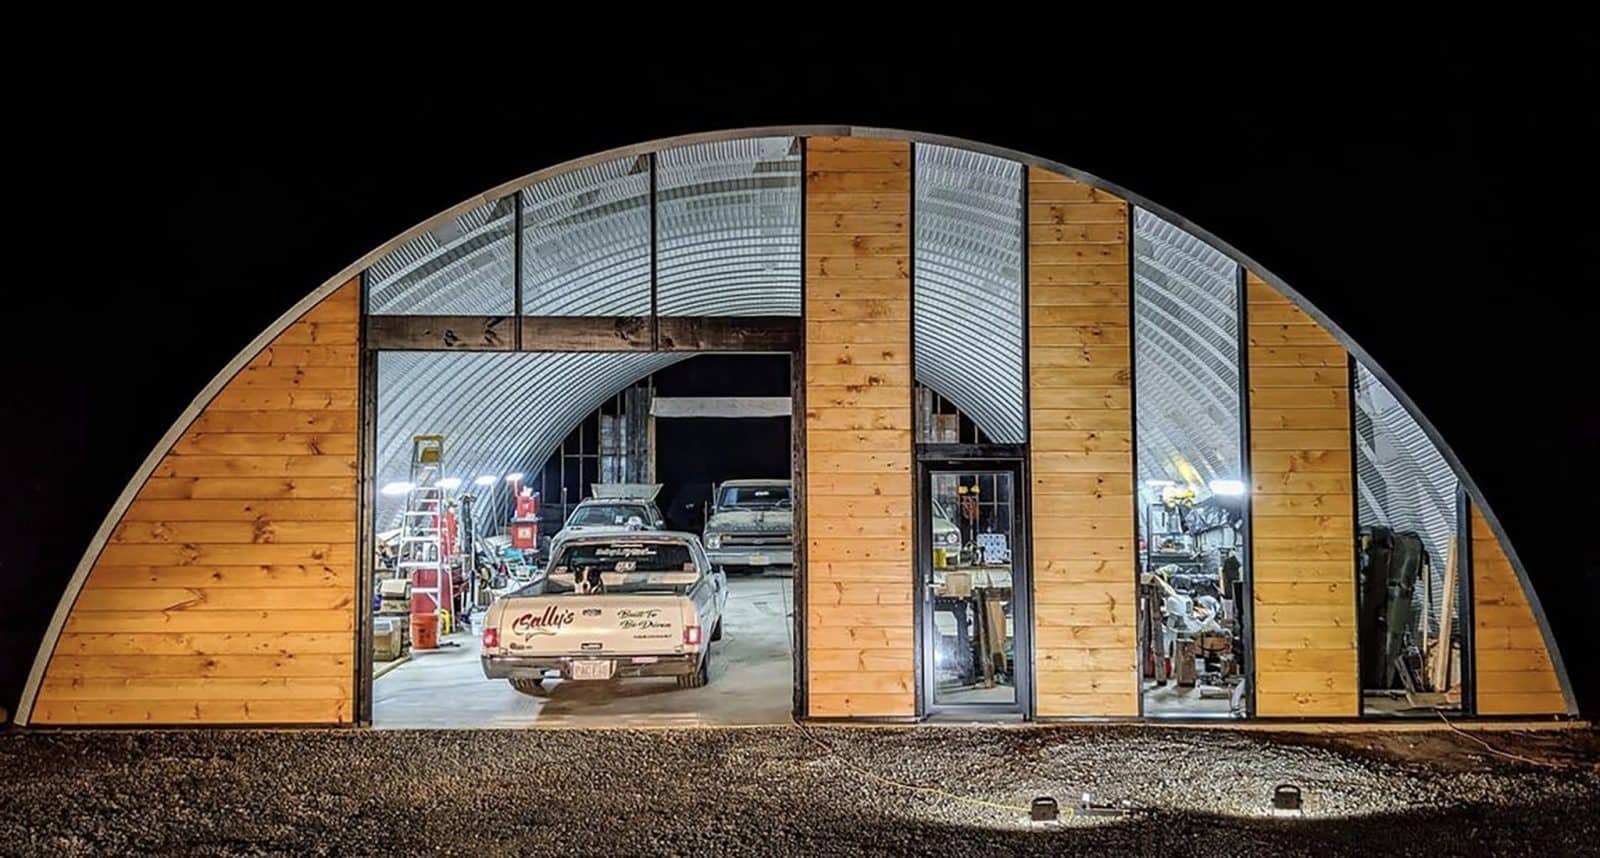 Sally's Speed Shop quonset hut garage